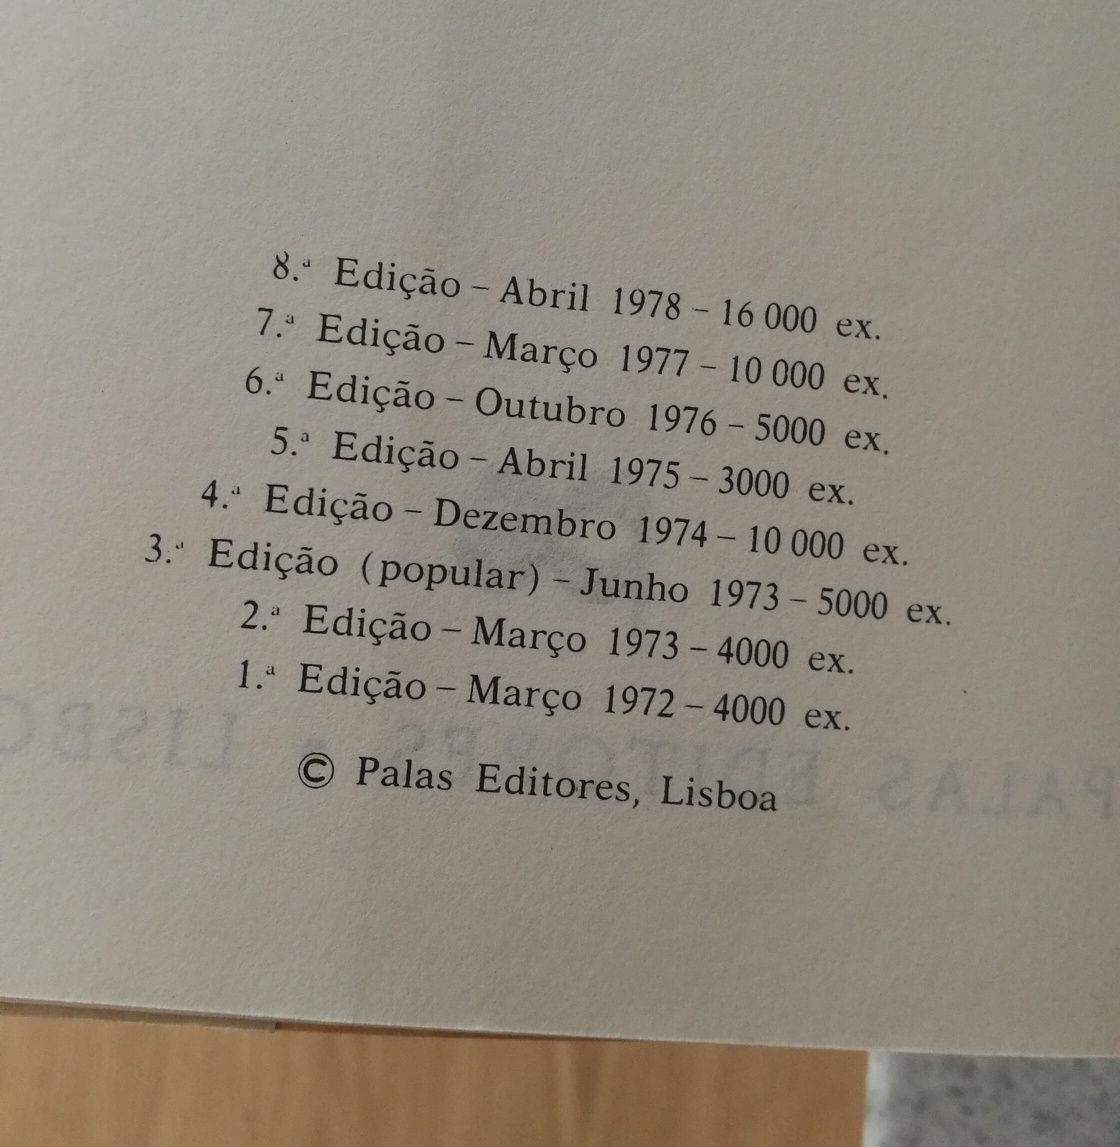 História de Portugal de A. H. de Oliveira Marques volumes 1 e 2